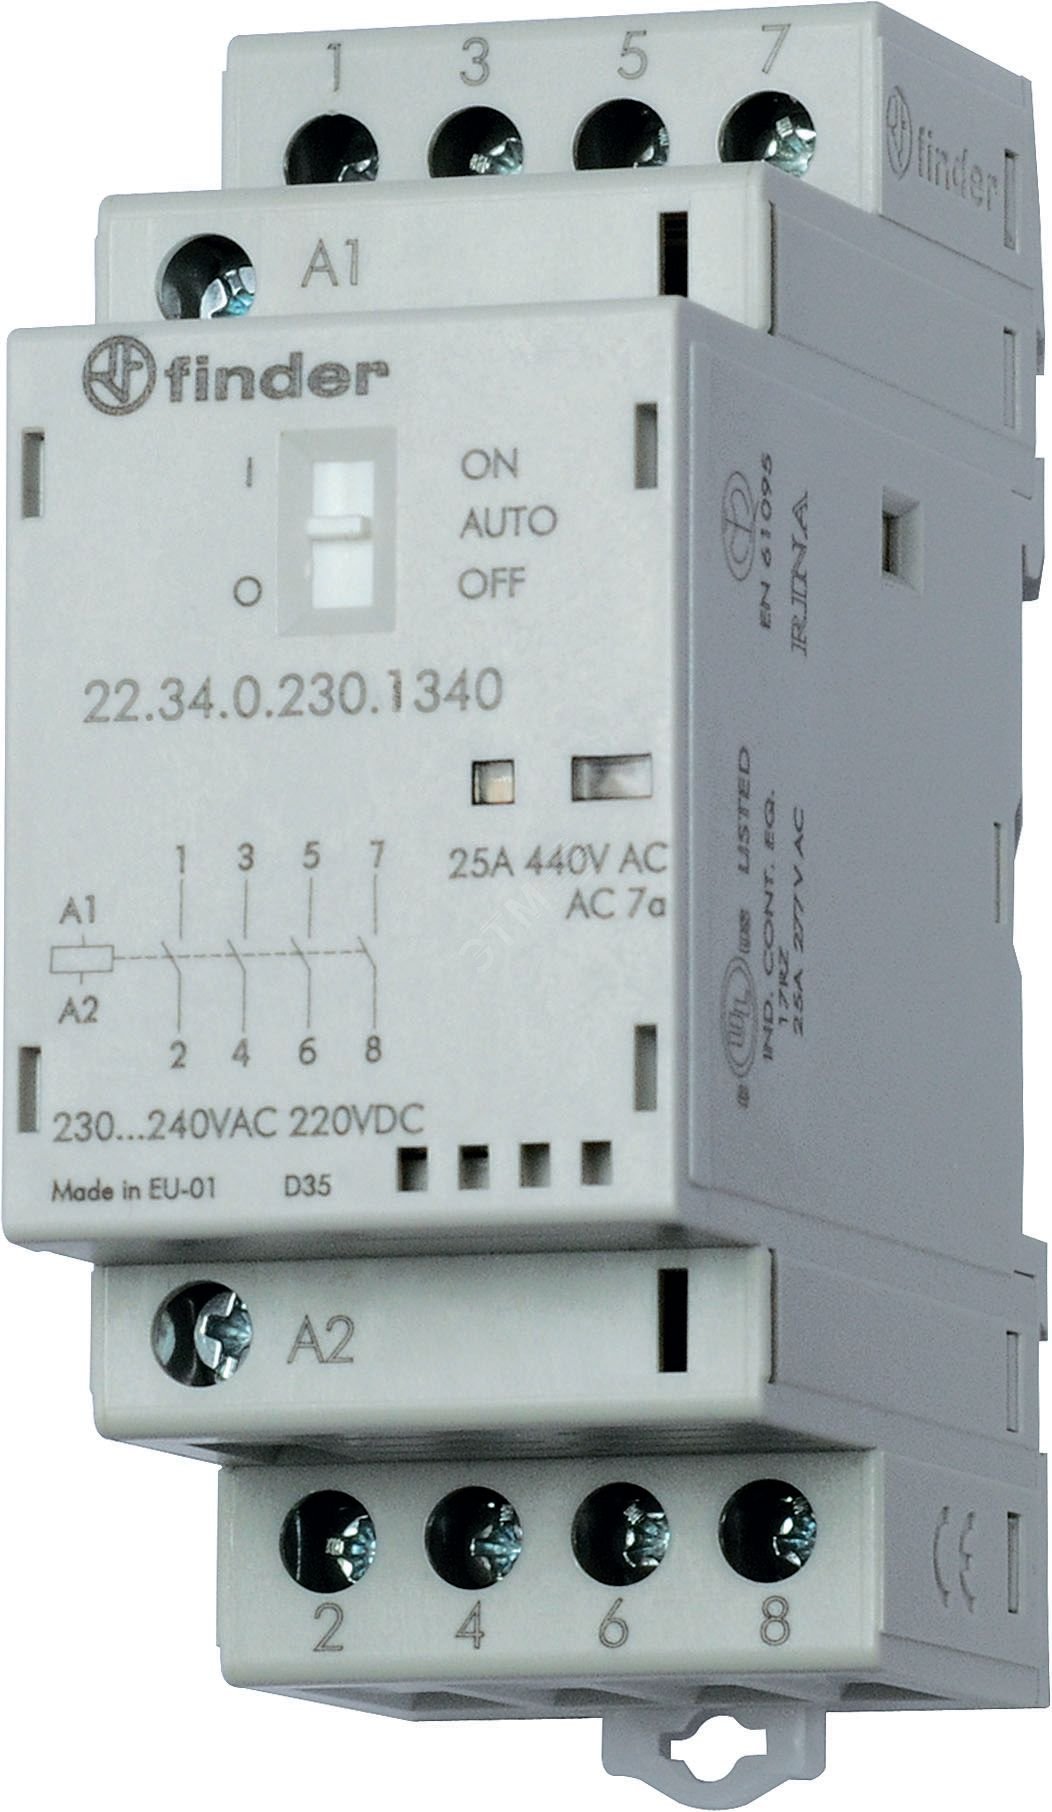 Контактор модульный 2NO+2NC 25А контакты AgSnO2 катушка 230В АС/DC 35мм IP20 переключатель Авто-Вкл-Выкл+механический индикатор/LED (1шт) 22.34.0.230.4640PAS FINDER - превью 2